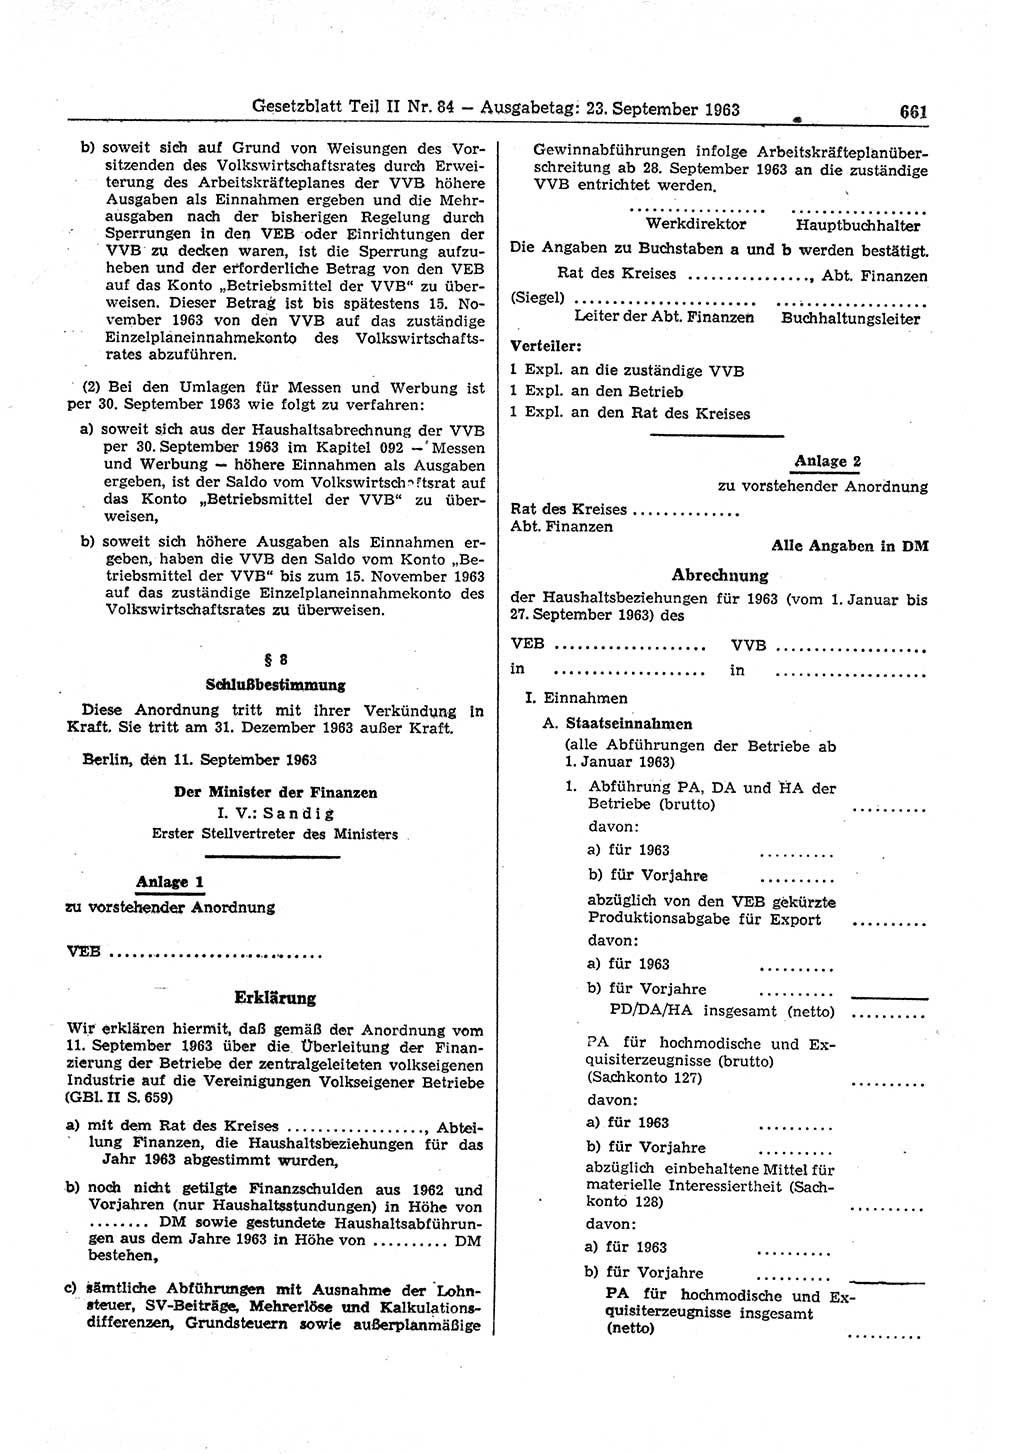 Gesetzblatt (GBl.) der Deutschen Demokratischen Republik (DDR) Teil ⅠⅠ 1963, Seite 661 (GBl. DDR ⅠⅠ 1963, S. 661)